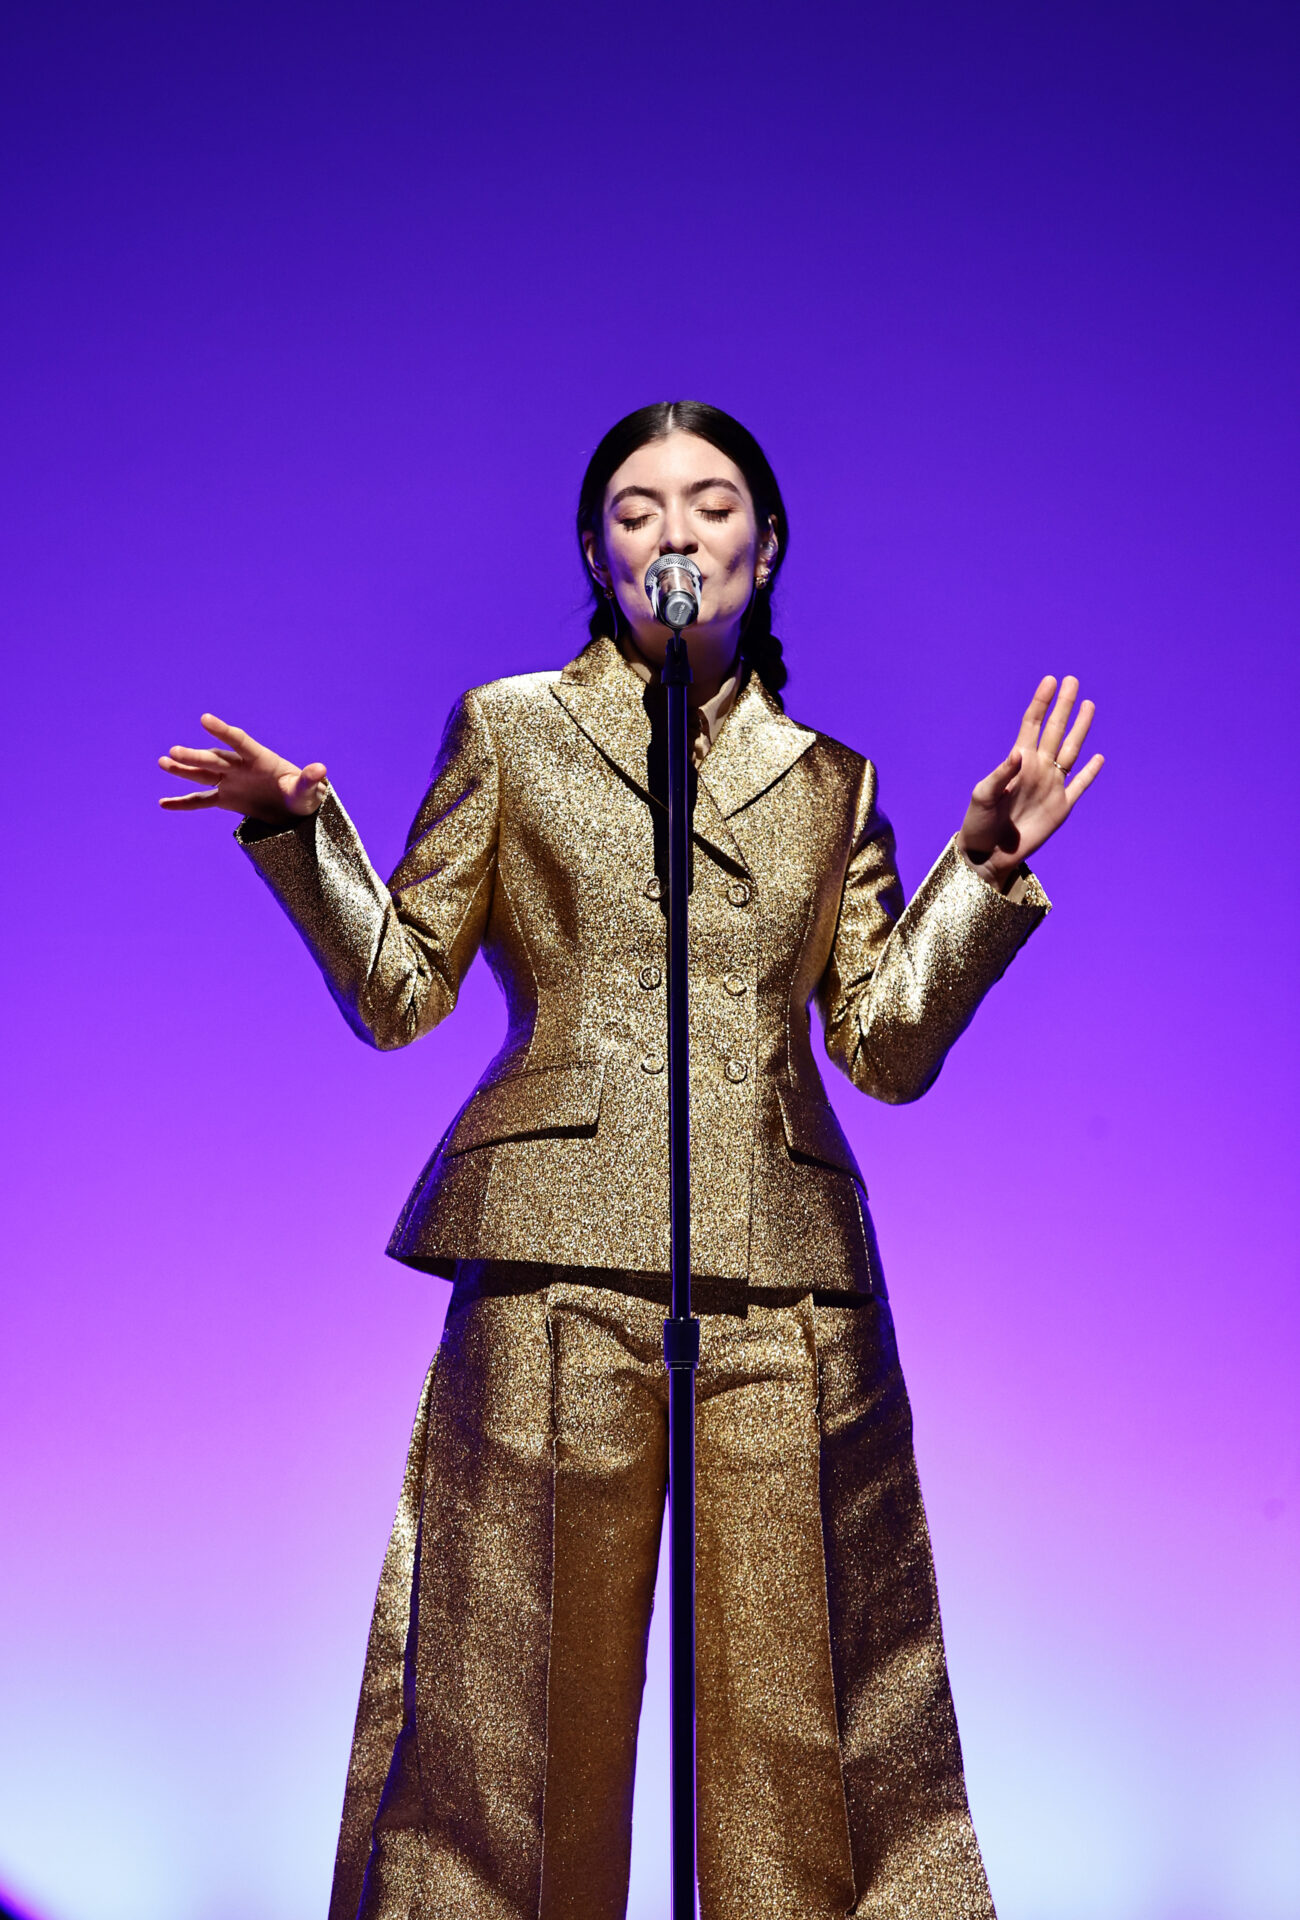 全米・全英のシングルチャート首位歌手ローデなども参加したディオールのショーがニューヨーク グッゲンハイム美術館で開催